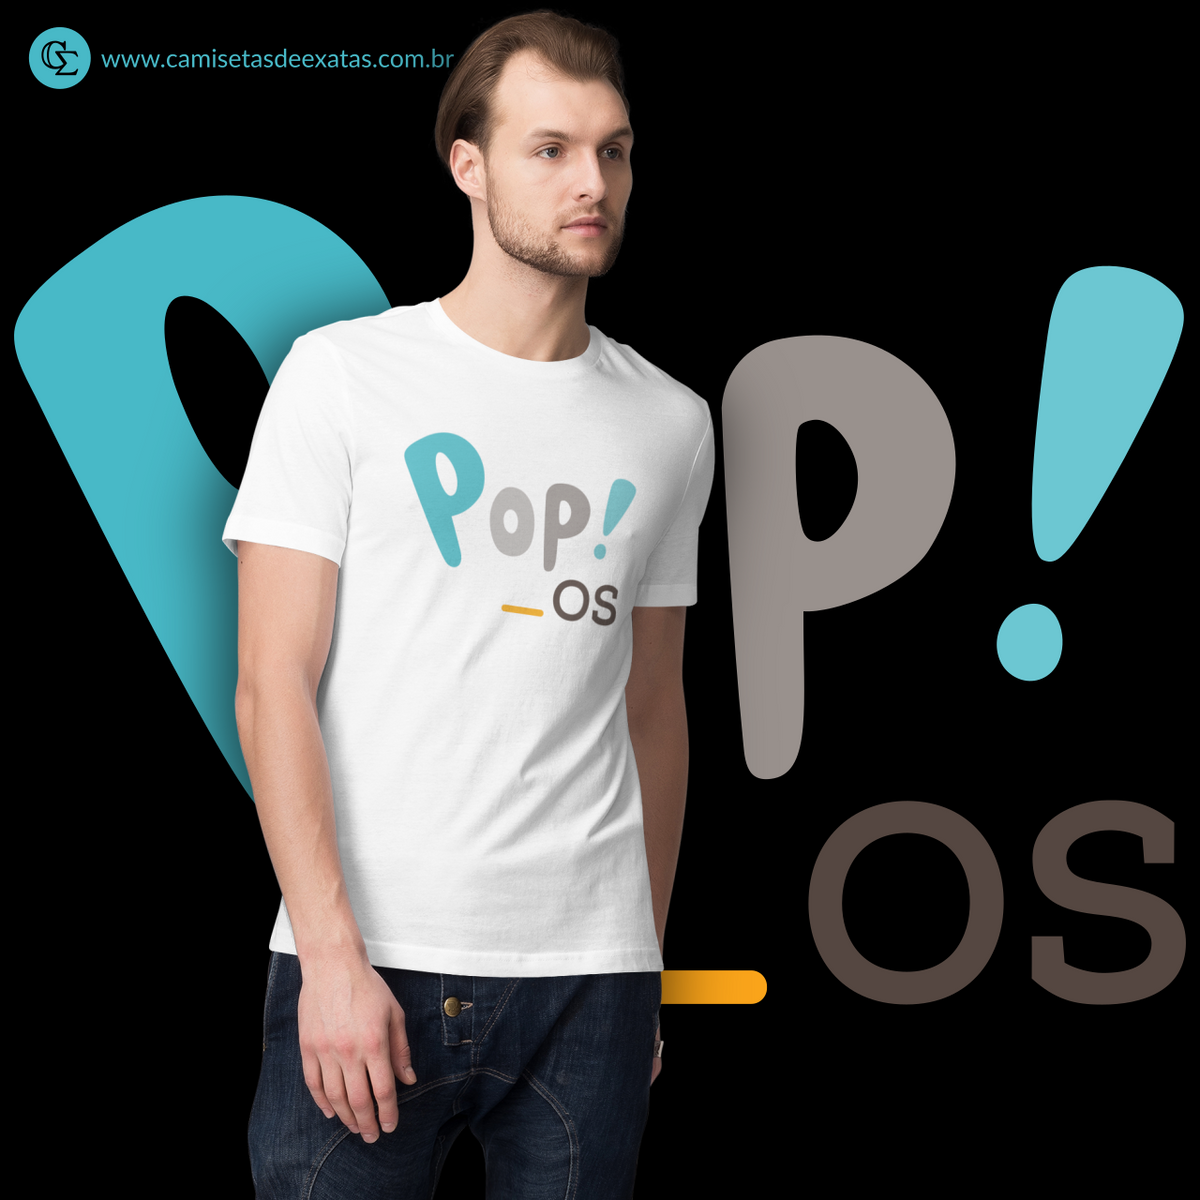 Nome do produto: POP OS [2]